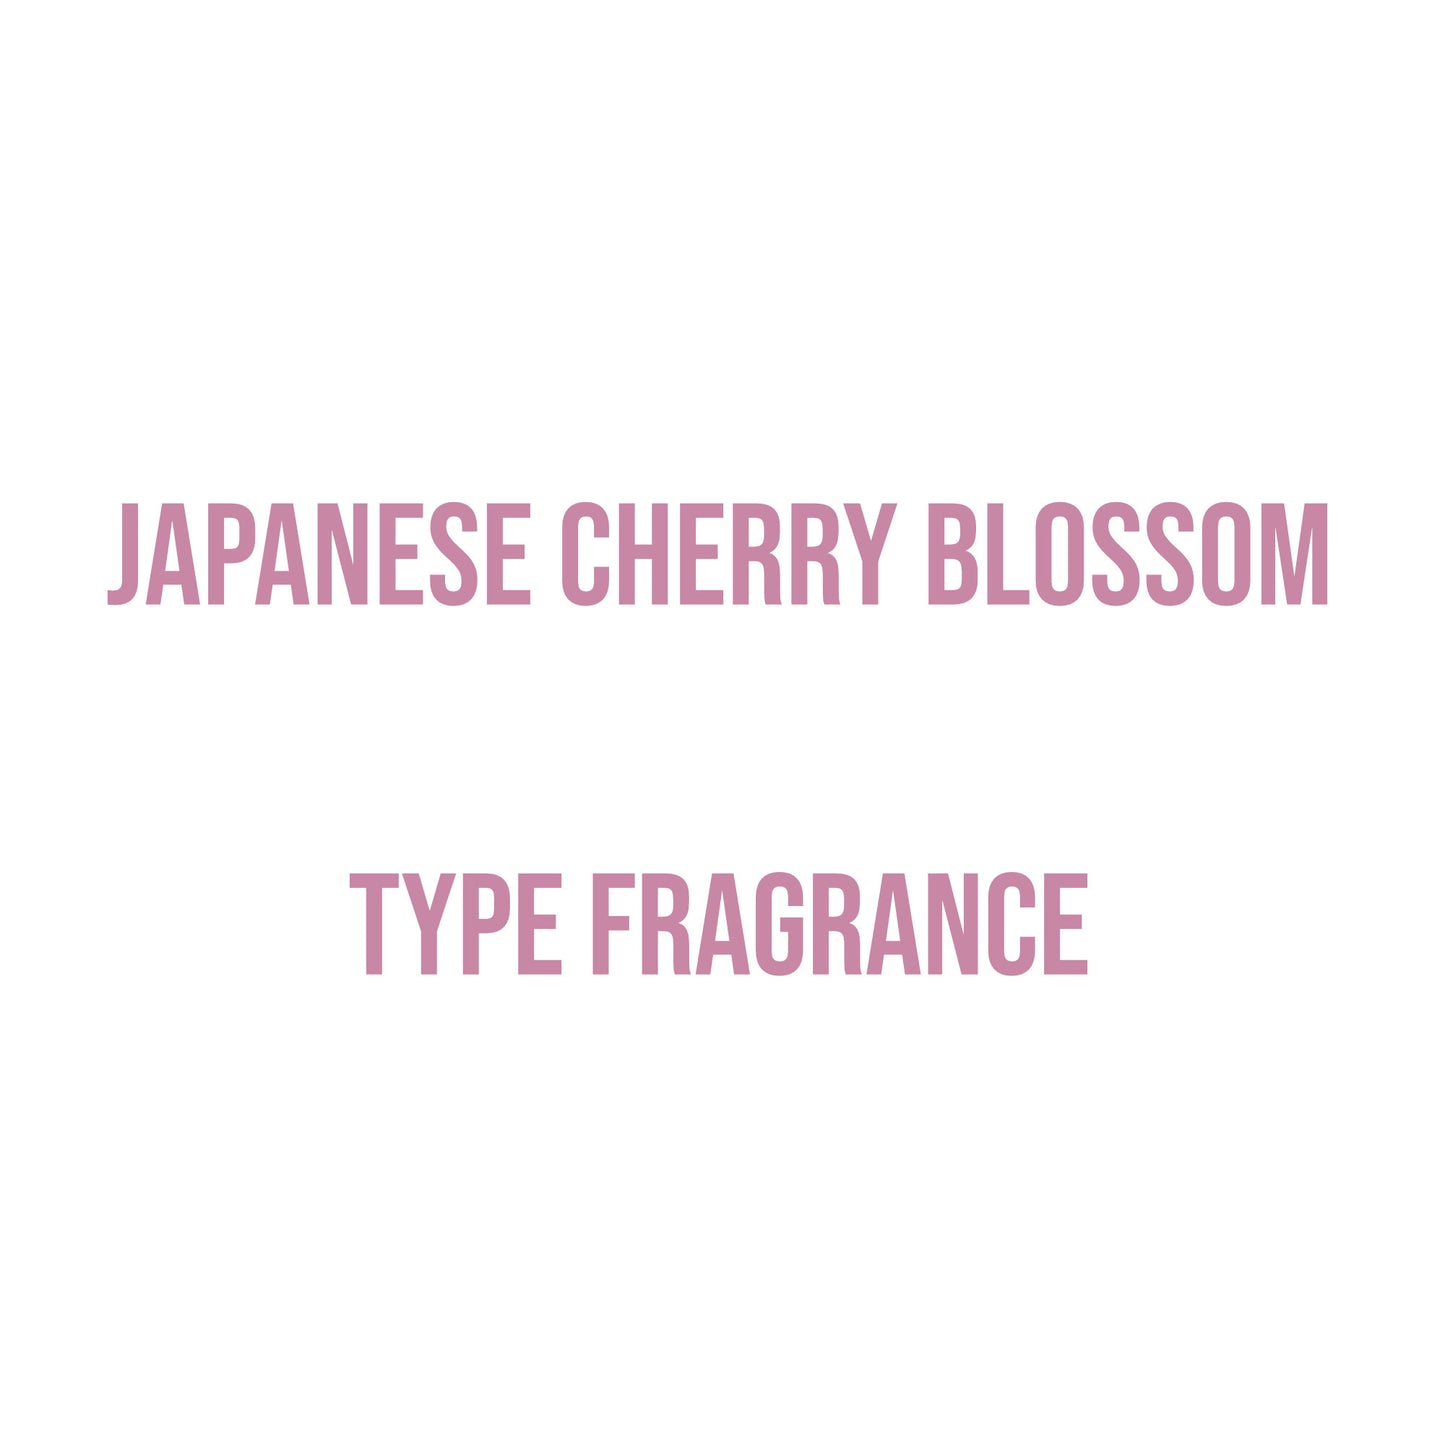 Japanese Cherry Blossom Type Fragrance